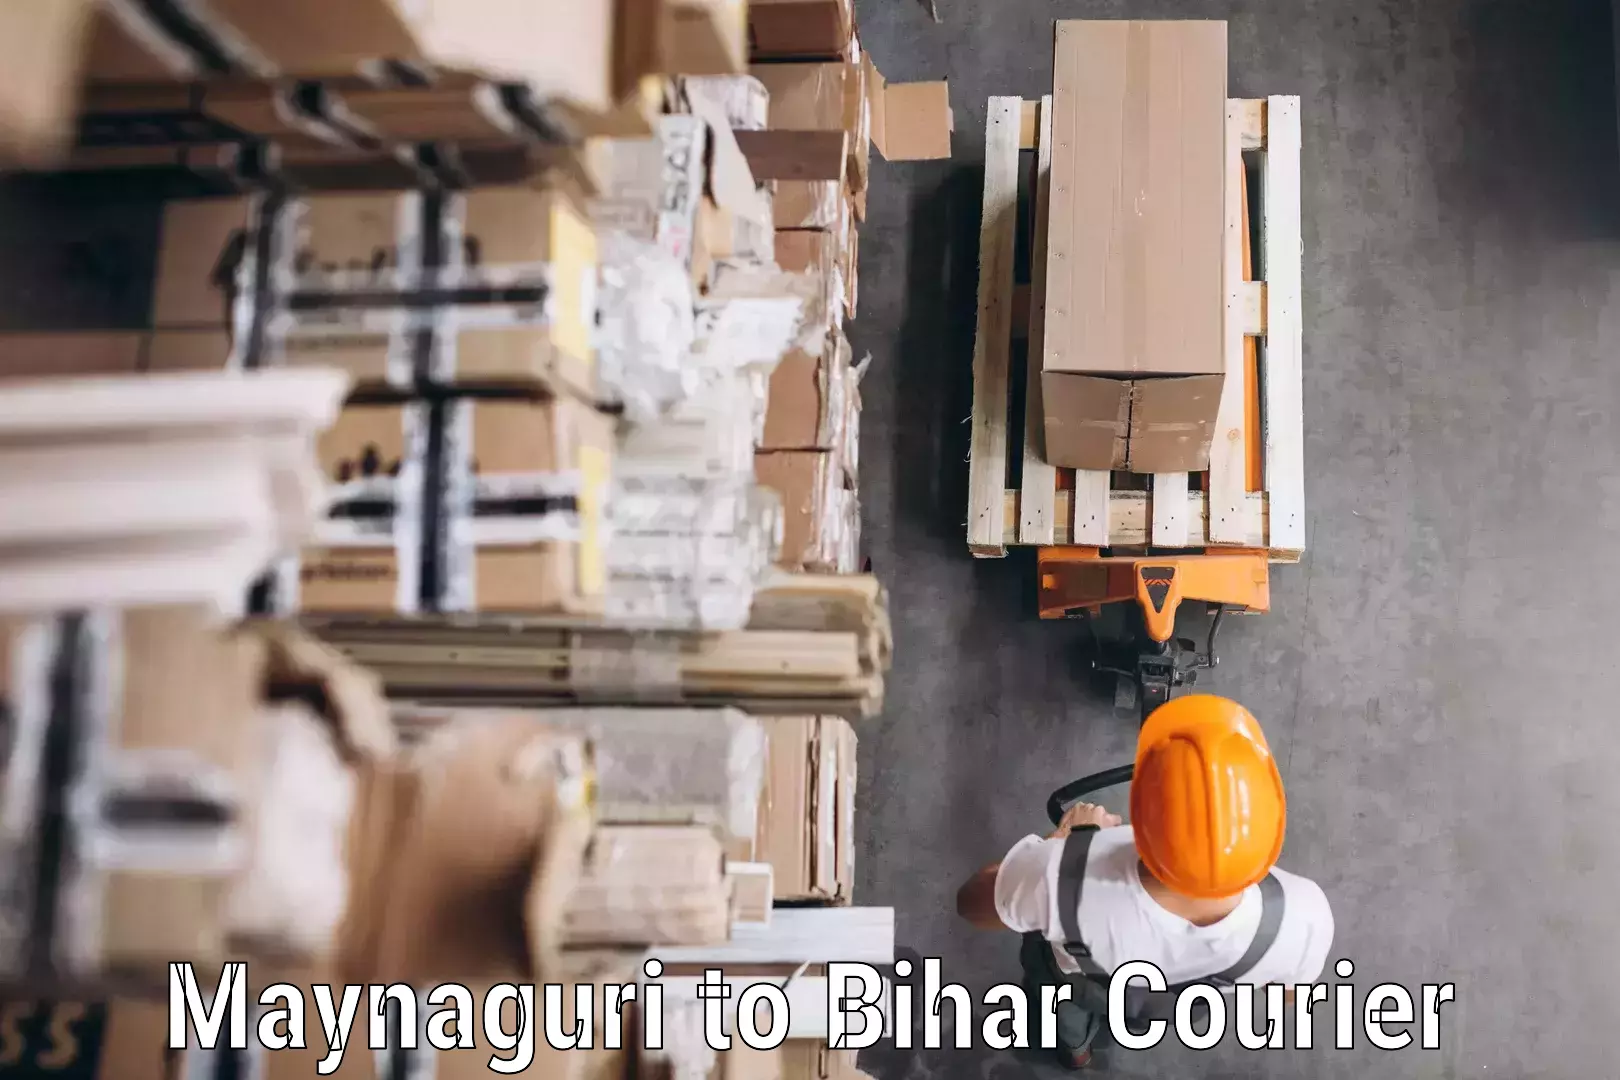 Door-to-door freight service Maynaguri to Bihar